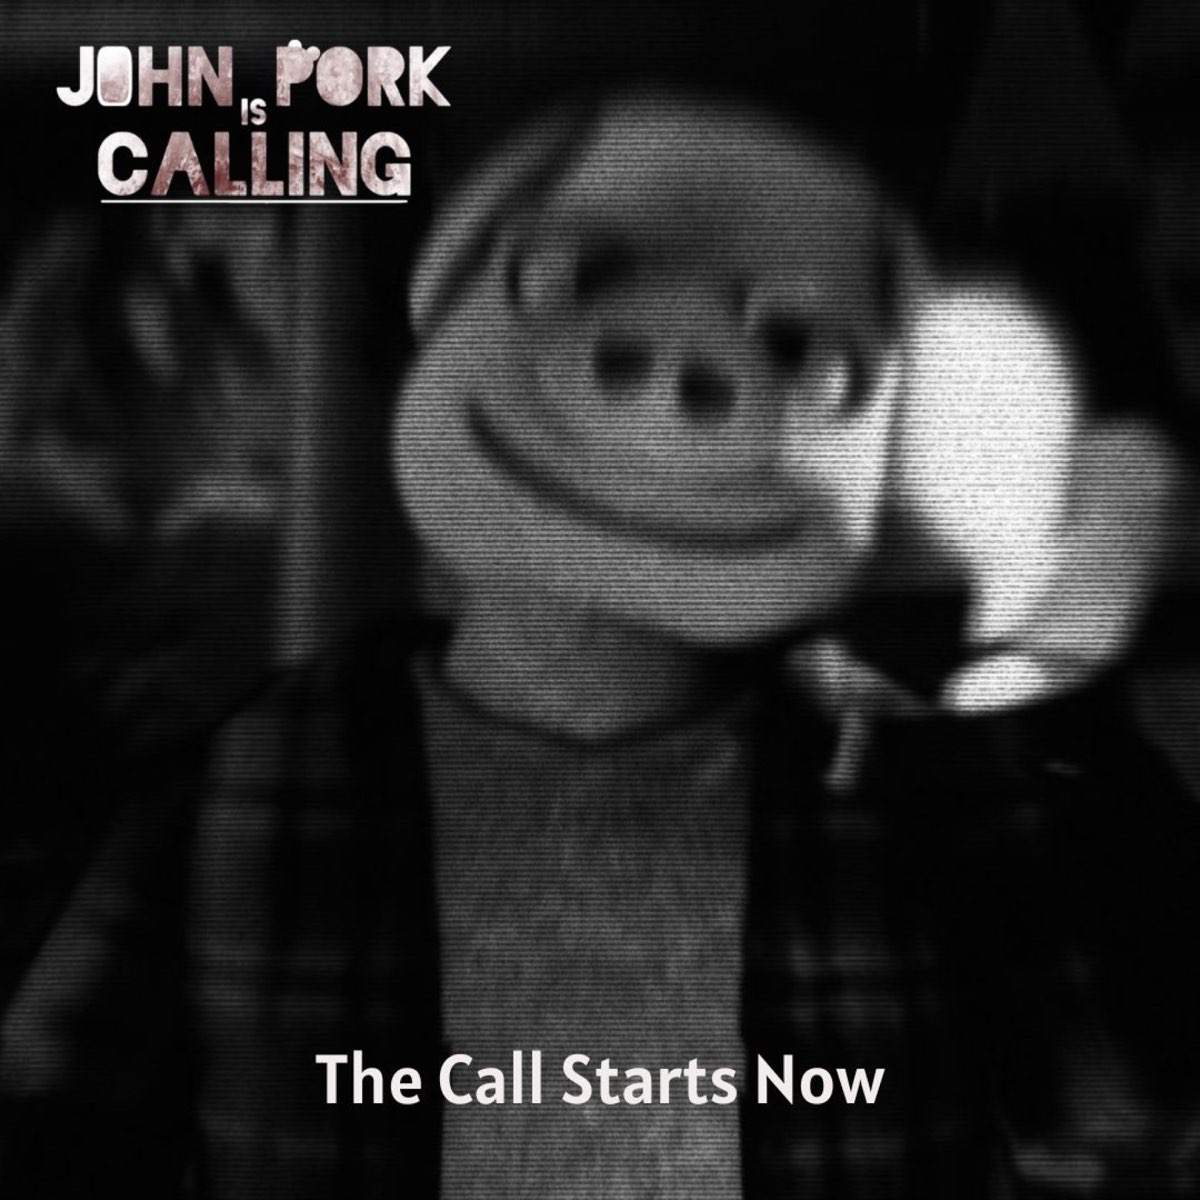 John Pork is calling horror moments 5 